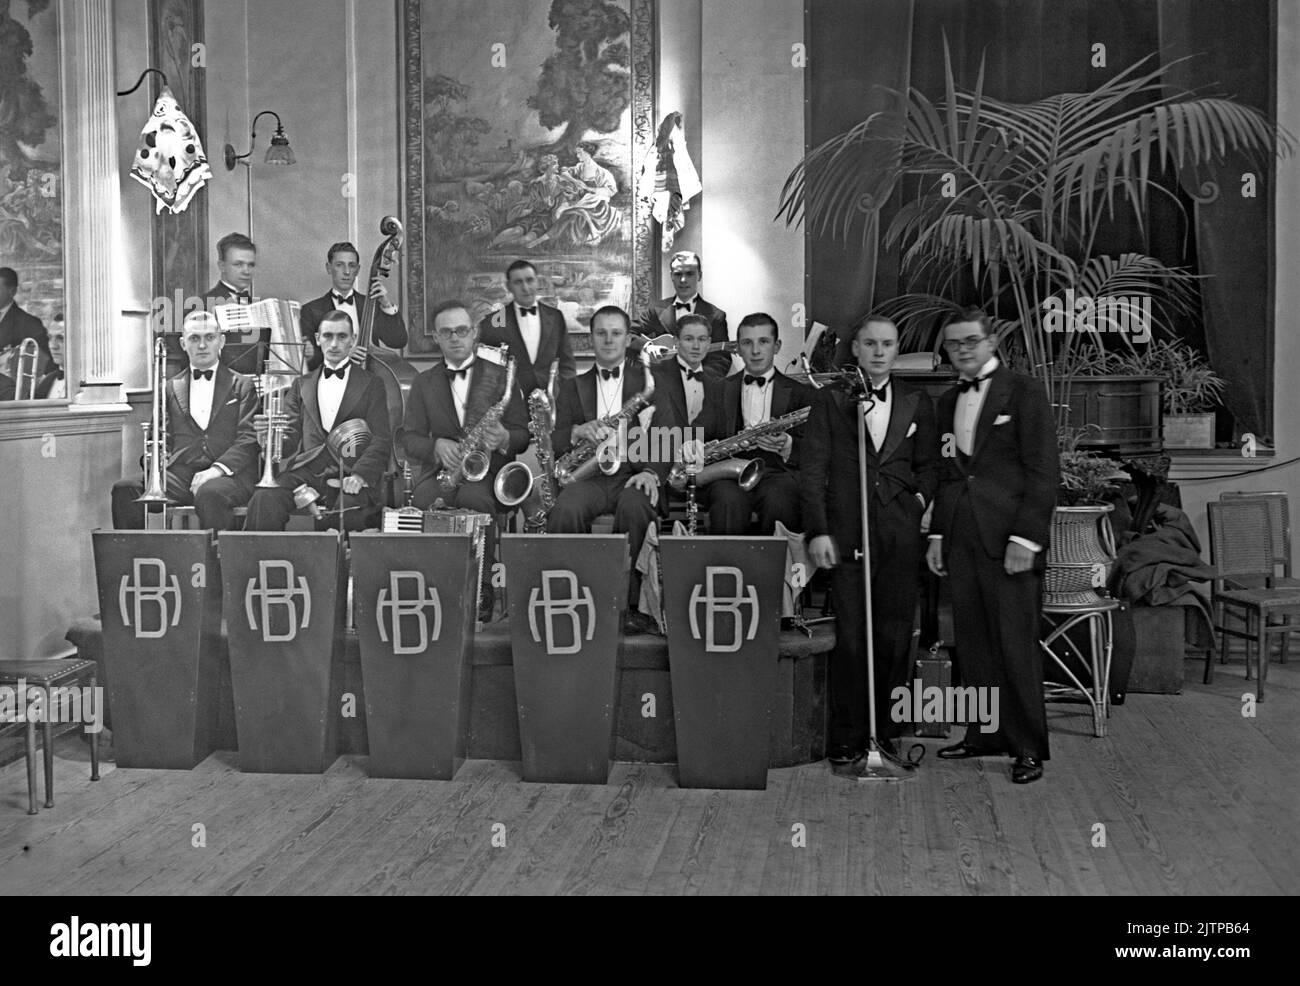 Una band di danza britannica, la Harry Blake Orchestra, presso il Portman Rooms, Baker Street, Londra, Regno Unito nel novembre 1937. Con 12 membri, questa era una band di grande qualità e, insolitamente per il tempo, comprendeva un bassista e un chitarrista. Blake è fotografato a destra. Le prime band dance e swing hanno avuto il loro massimo splendore nel Regno Unito negli anni 1920s-30s. Band suonate nelle sale da ballo e nelle sale da ballo dell'hotel. Hanno suonato musica melodica e di buon tempo e i singoli giocatori suonavano in diverse band. Questa immagine proviene da un vecchio vetro negativo - una fotografia vintage 1930s. Foto Stock